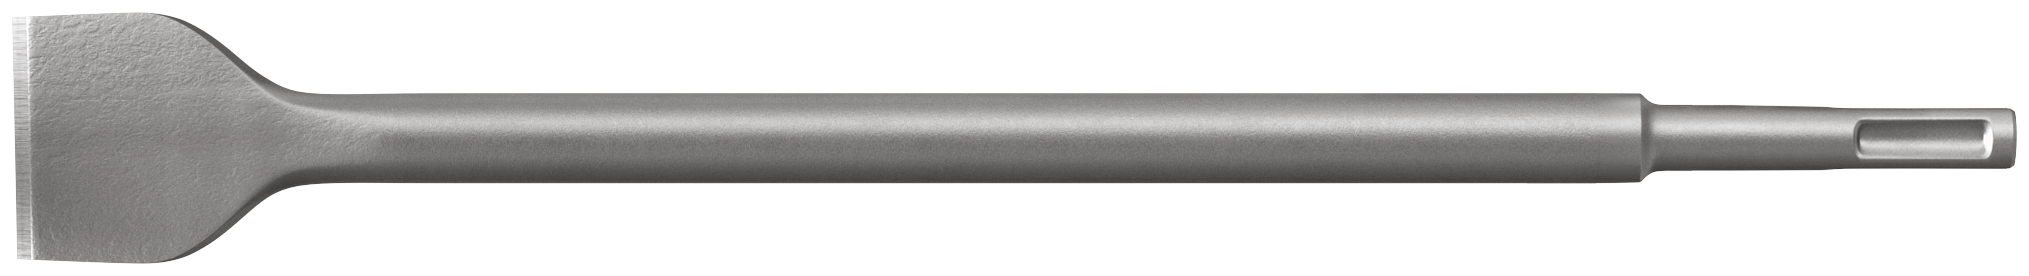 fischer Punta martelli perforatori SDS Plus I M-Spat 40/250 (1 Pz.) Scalpello ad alte prestazioni con attacco SDS Plus e SDS Max.